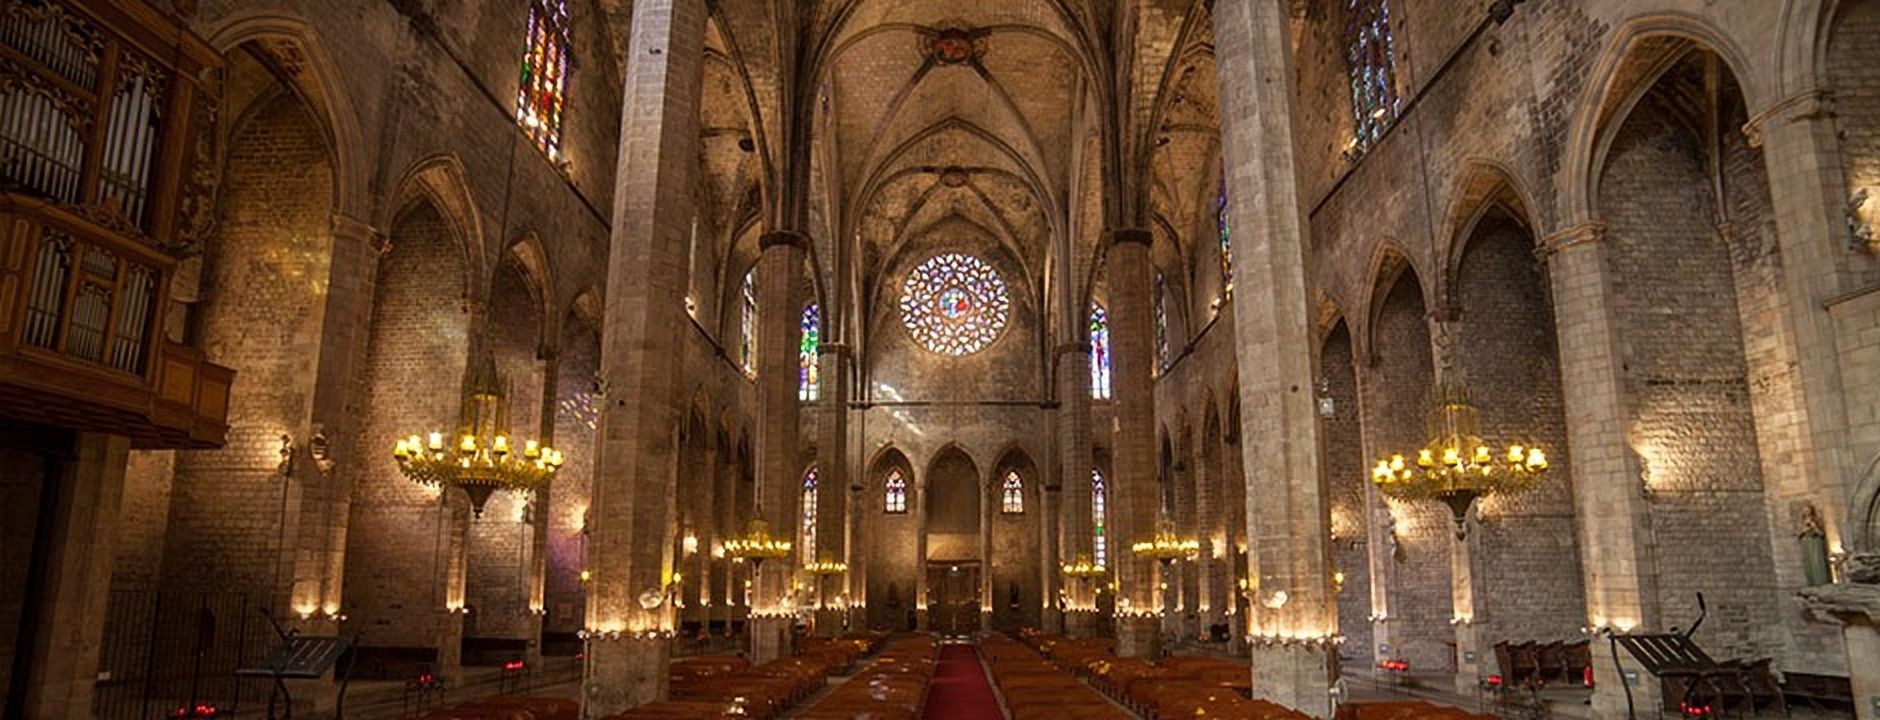 Basílica de Santa María del Mar / SANTA MARÍA DEL MAR